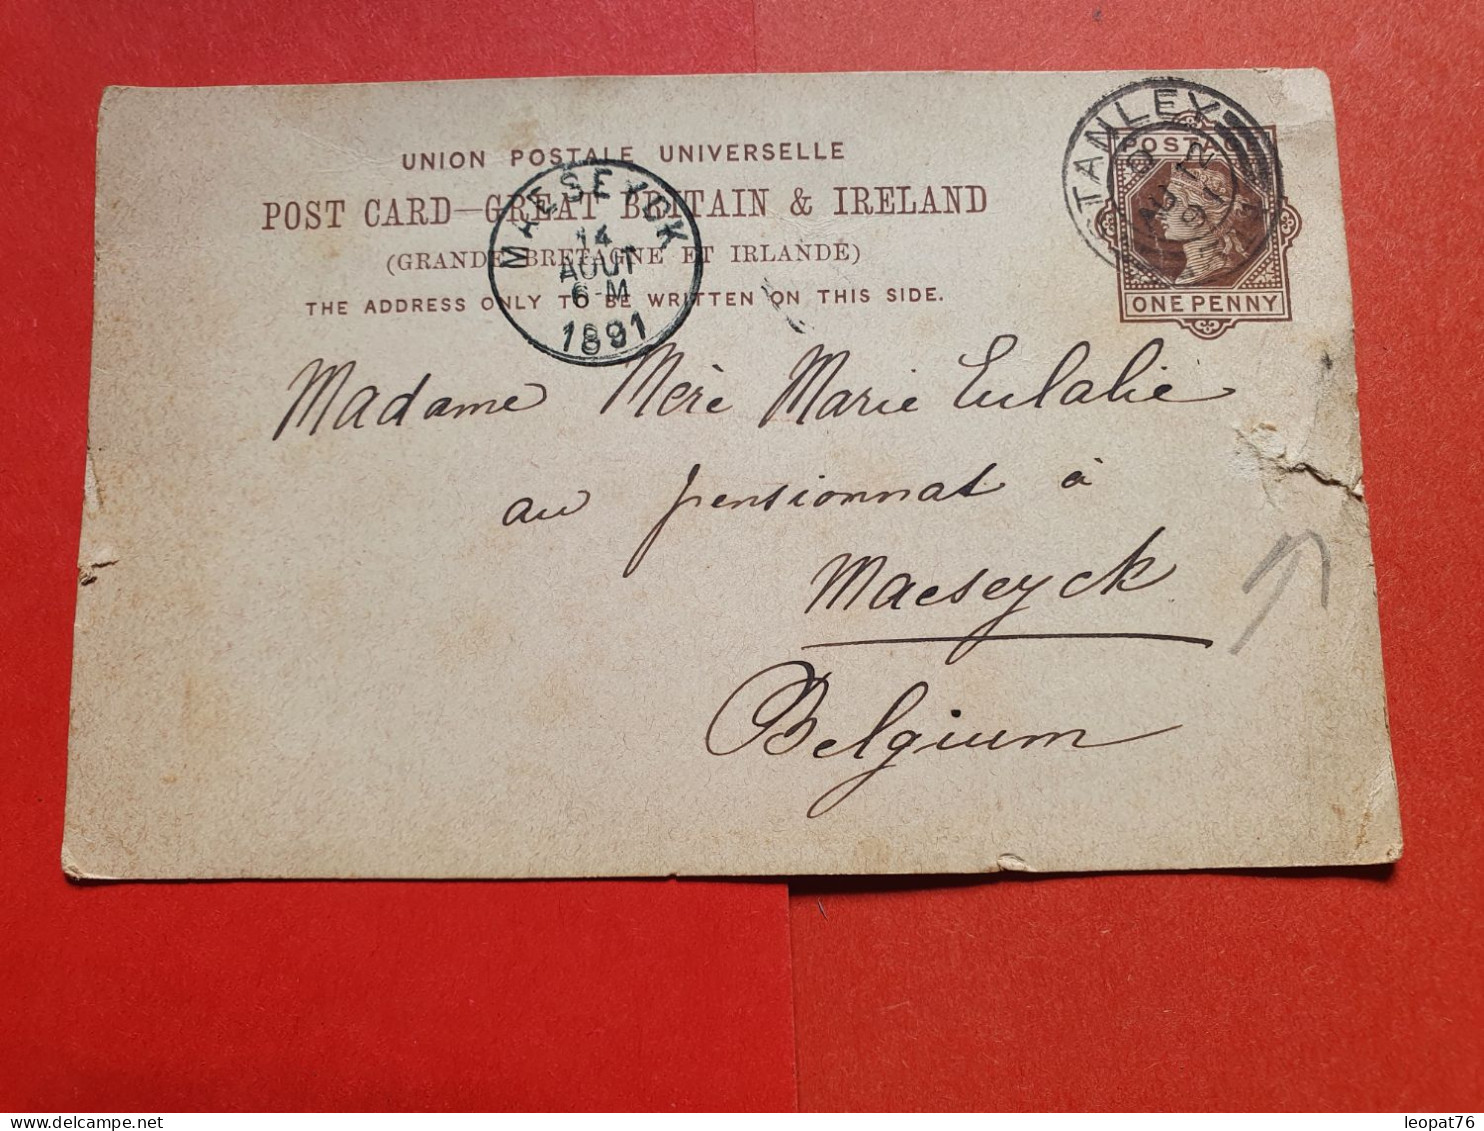 GB - Entier Postal ( Accroc à Droite ) De Stanley Pour La Belgique En 1891 - Réf 1639 - Material Postal